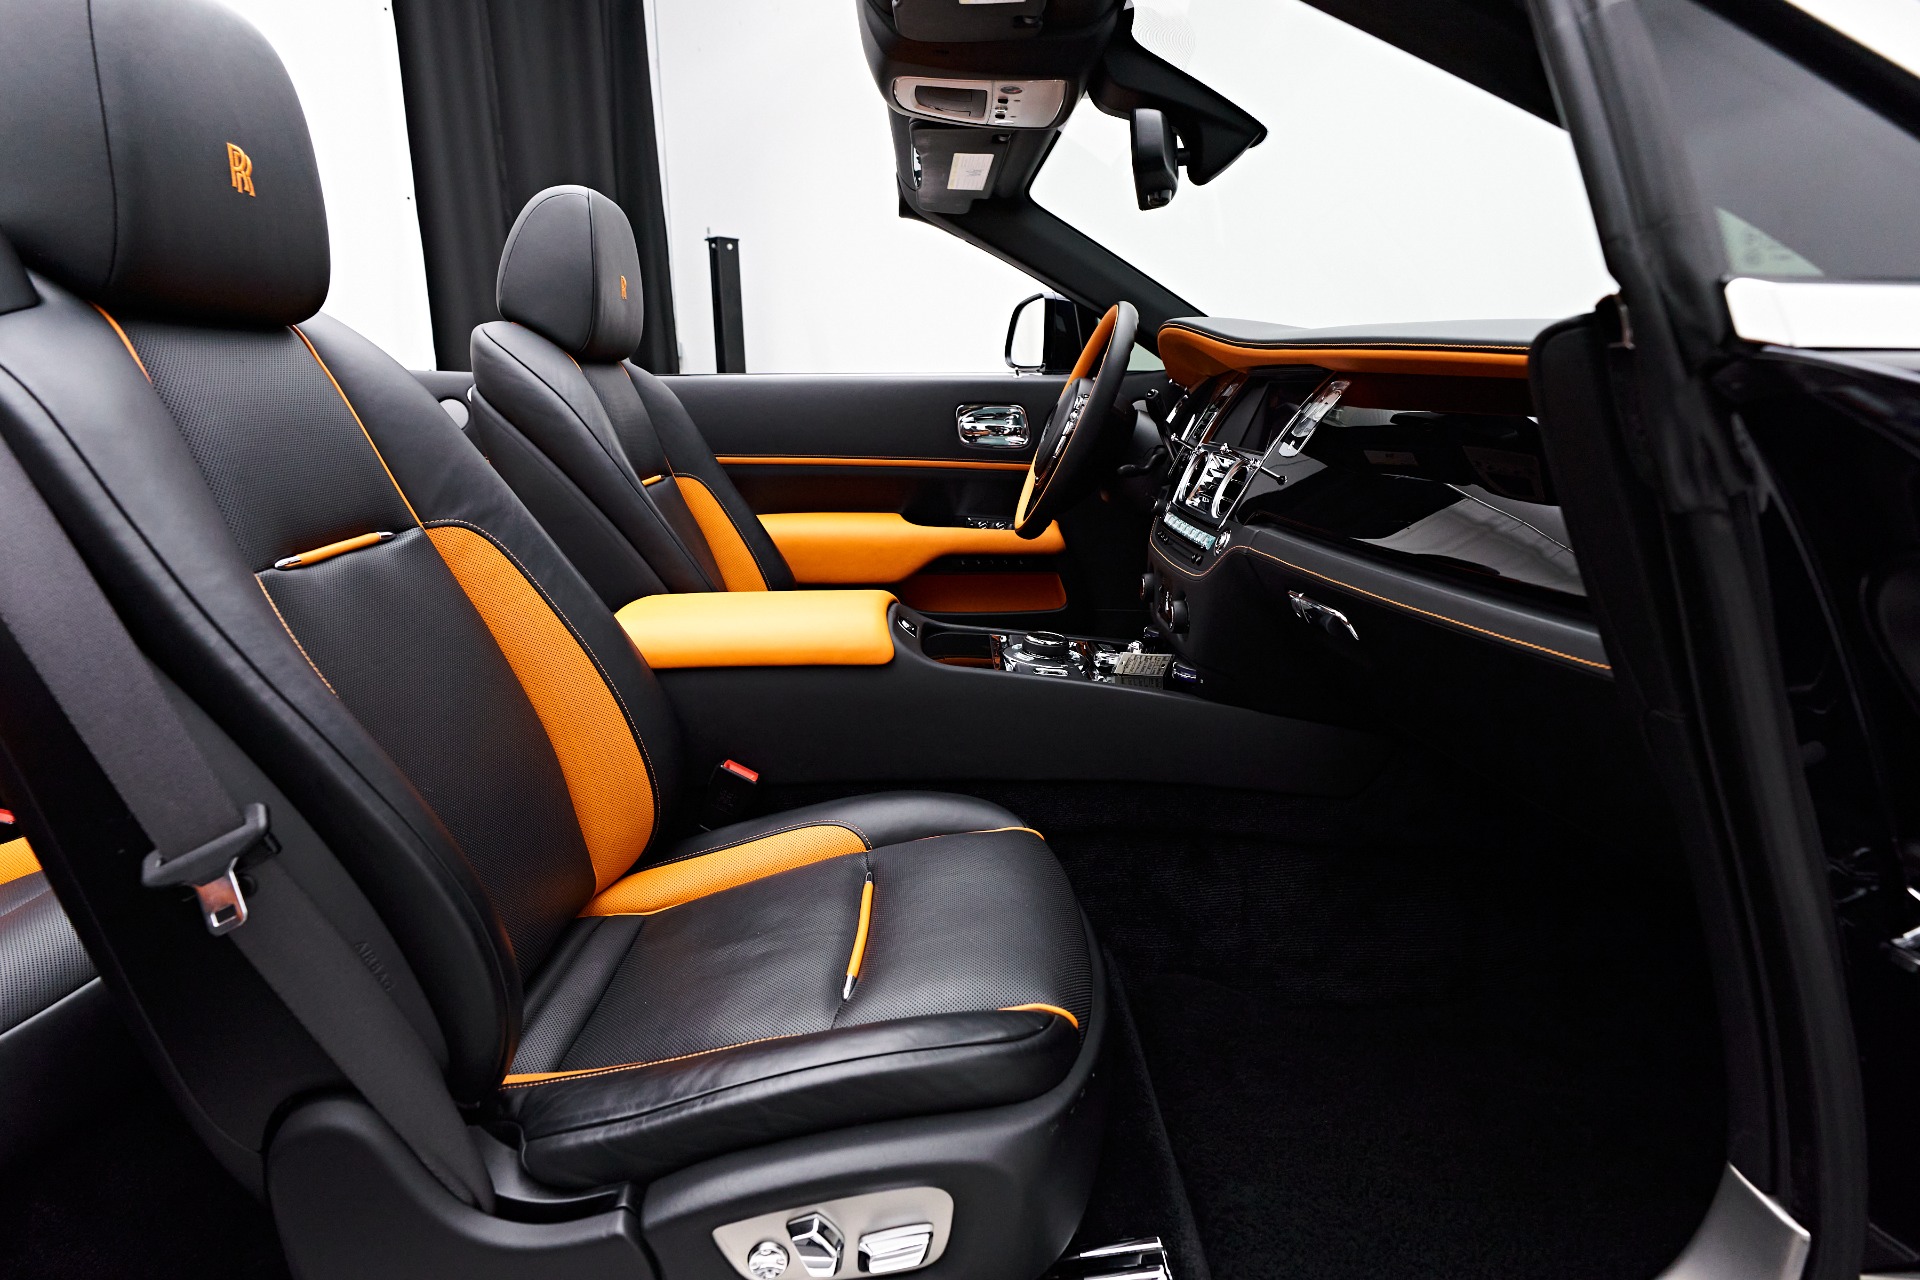 Black Hatchback Ultra Comfort Car Seat Cover at Rs 15000/set in